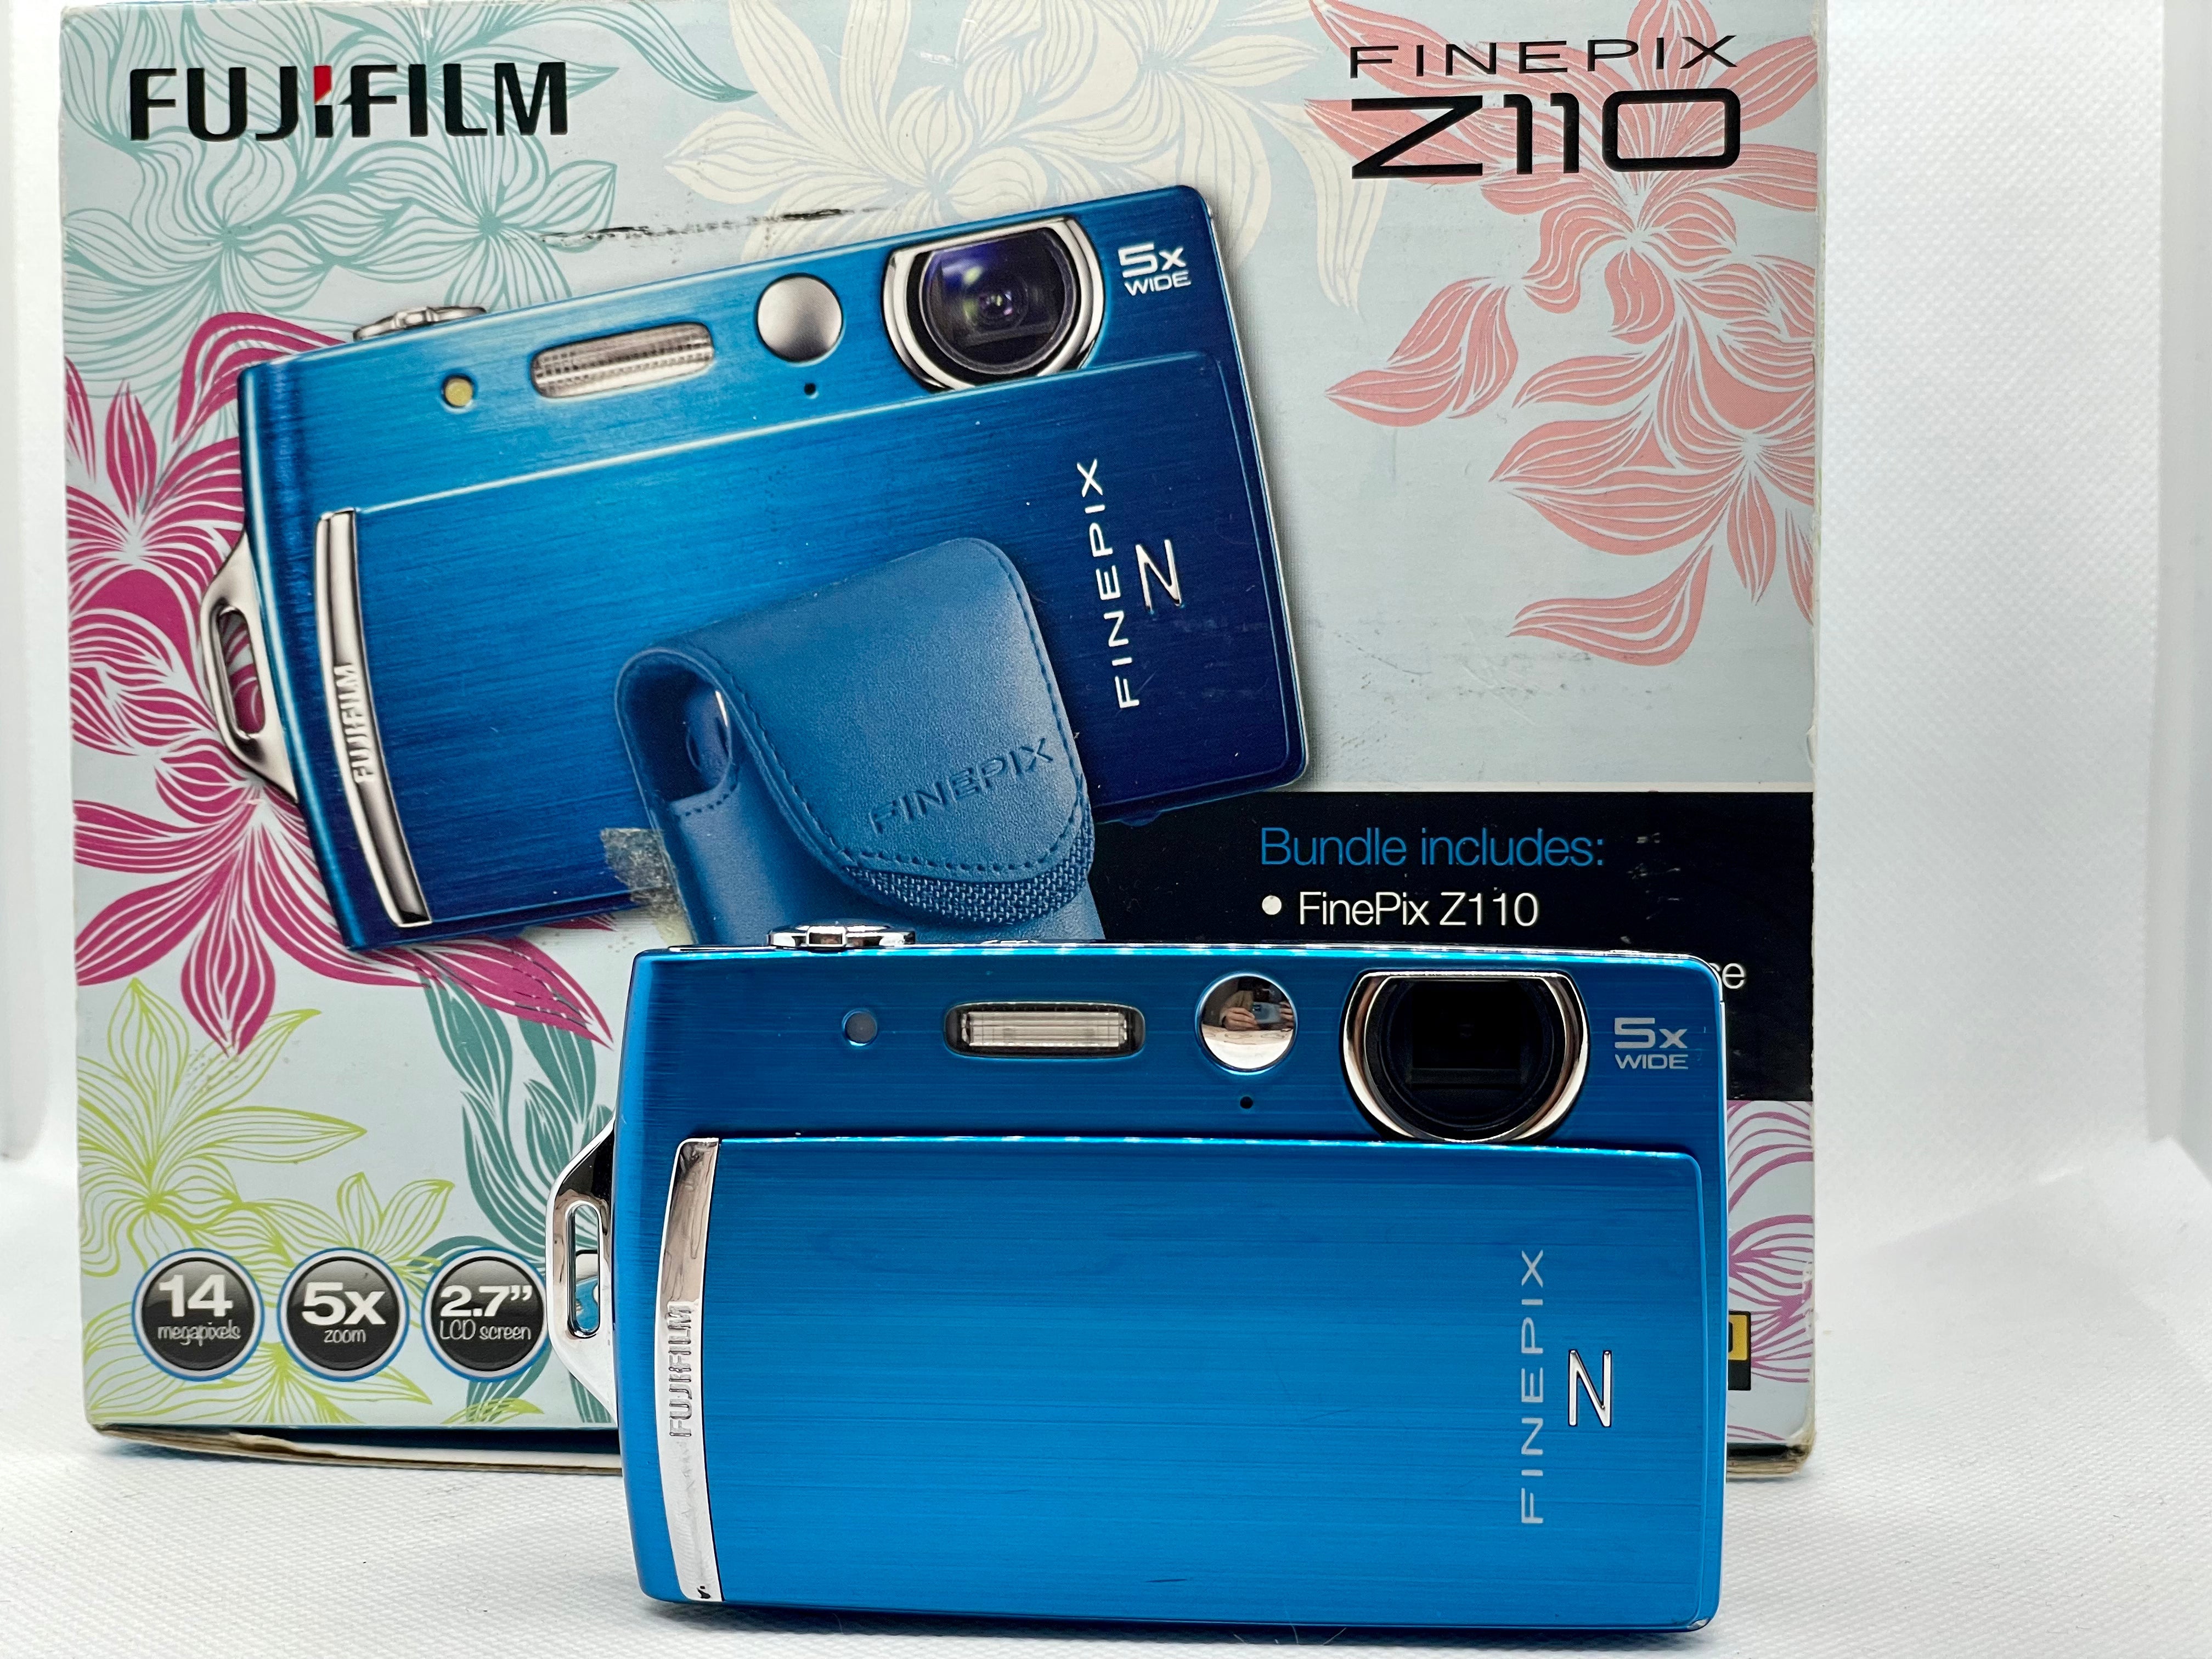 Fujifilm Finepix Z110 Digital Camera With Box Set